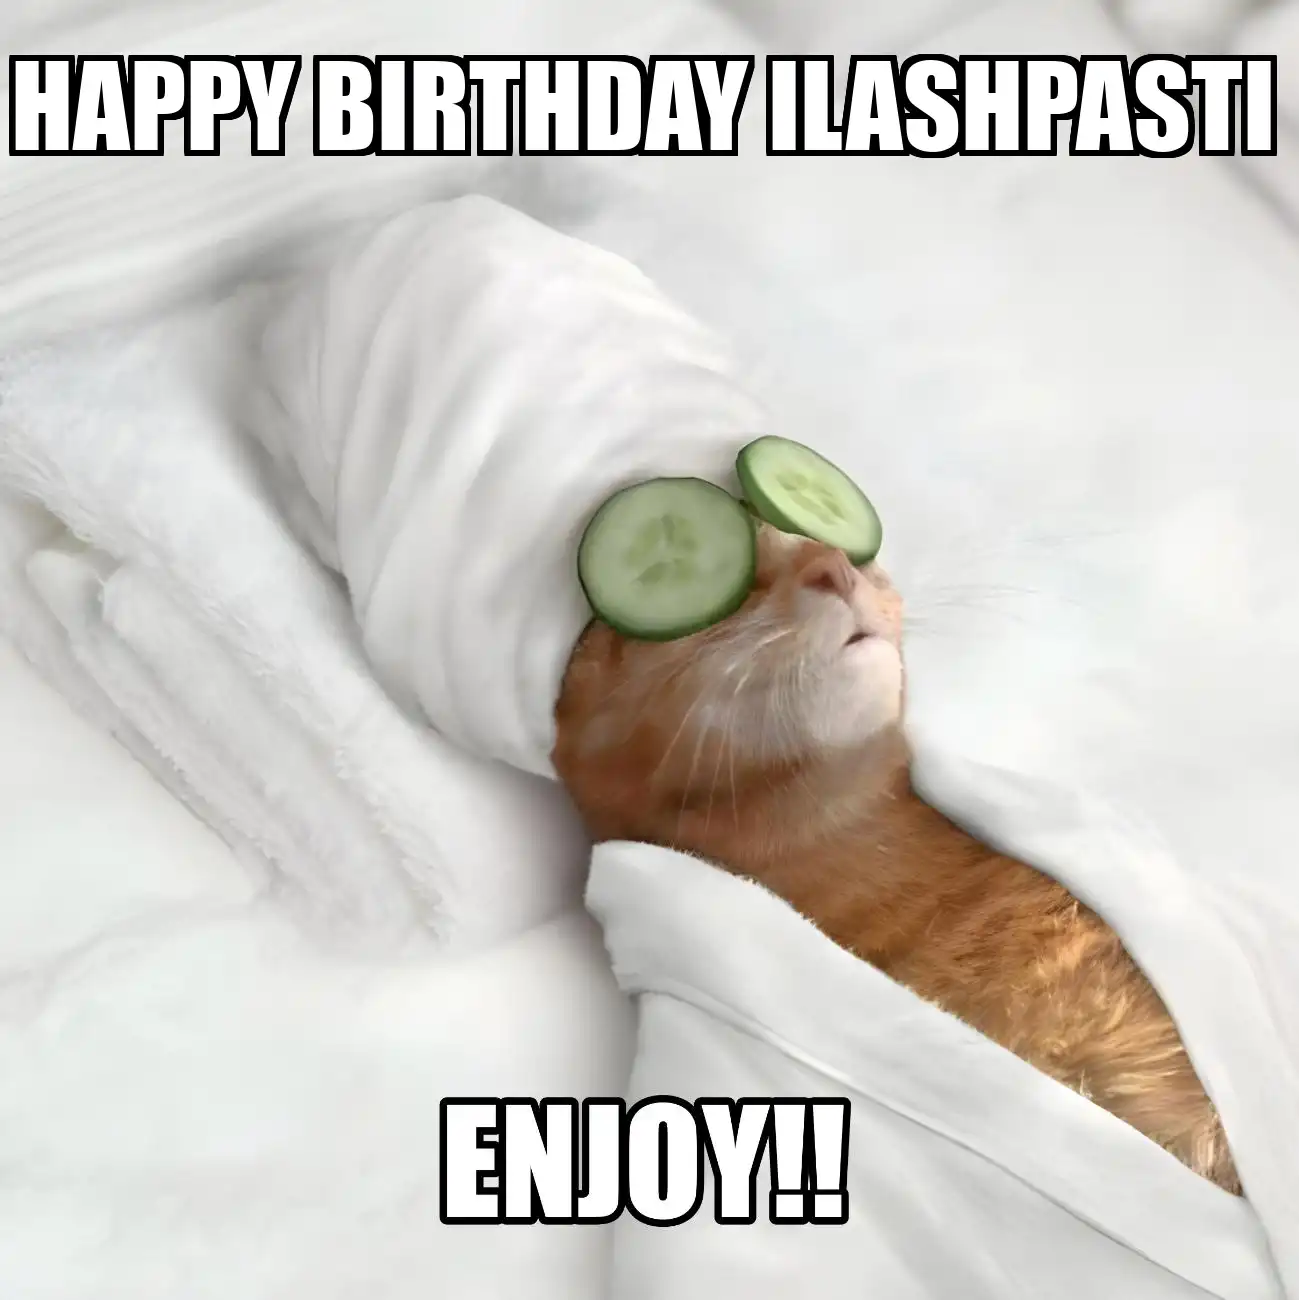 Happy Birthday Ilashpasti Enjoy Cat Meme